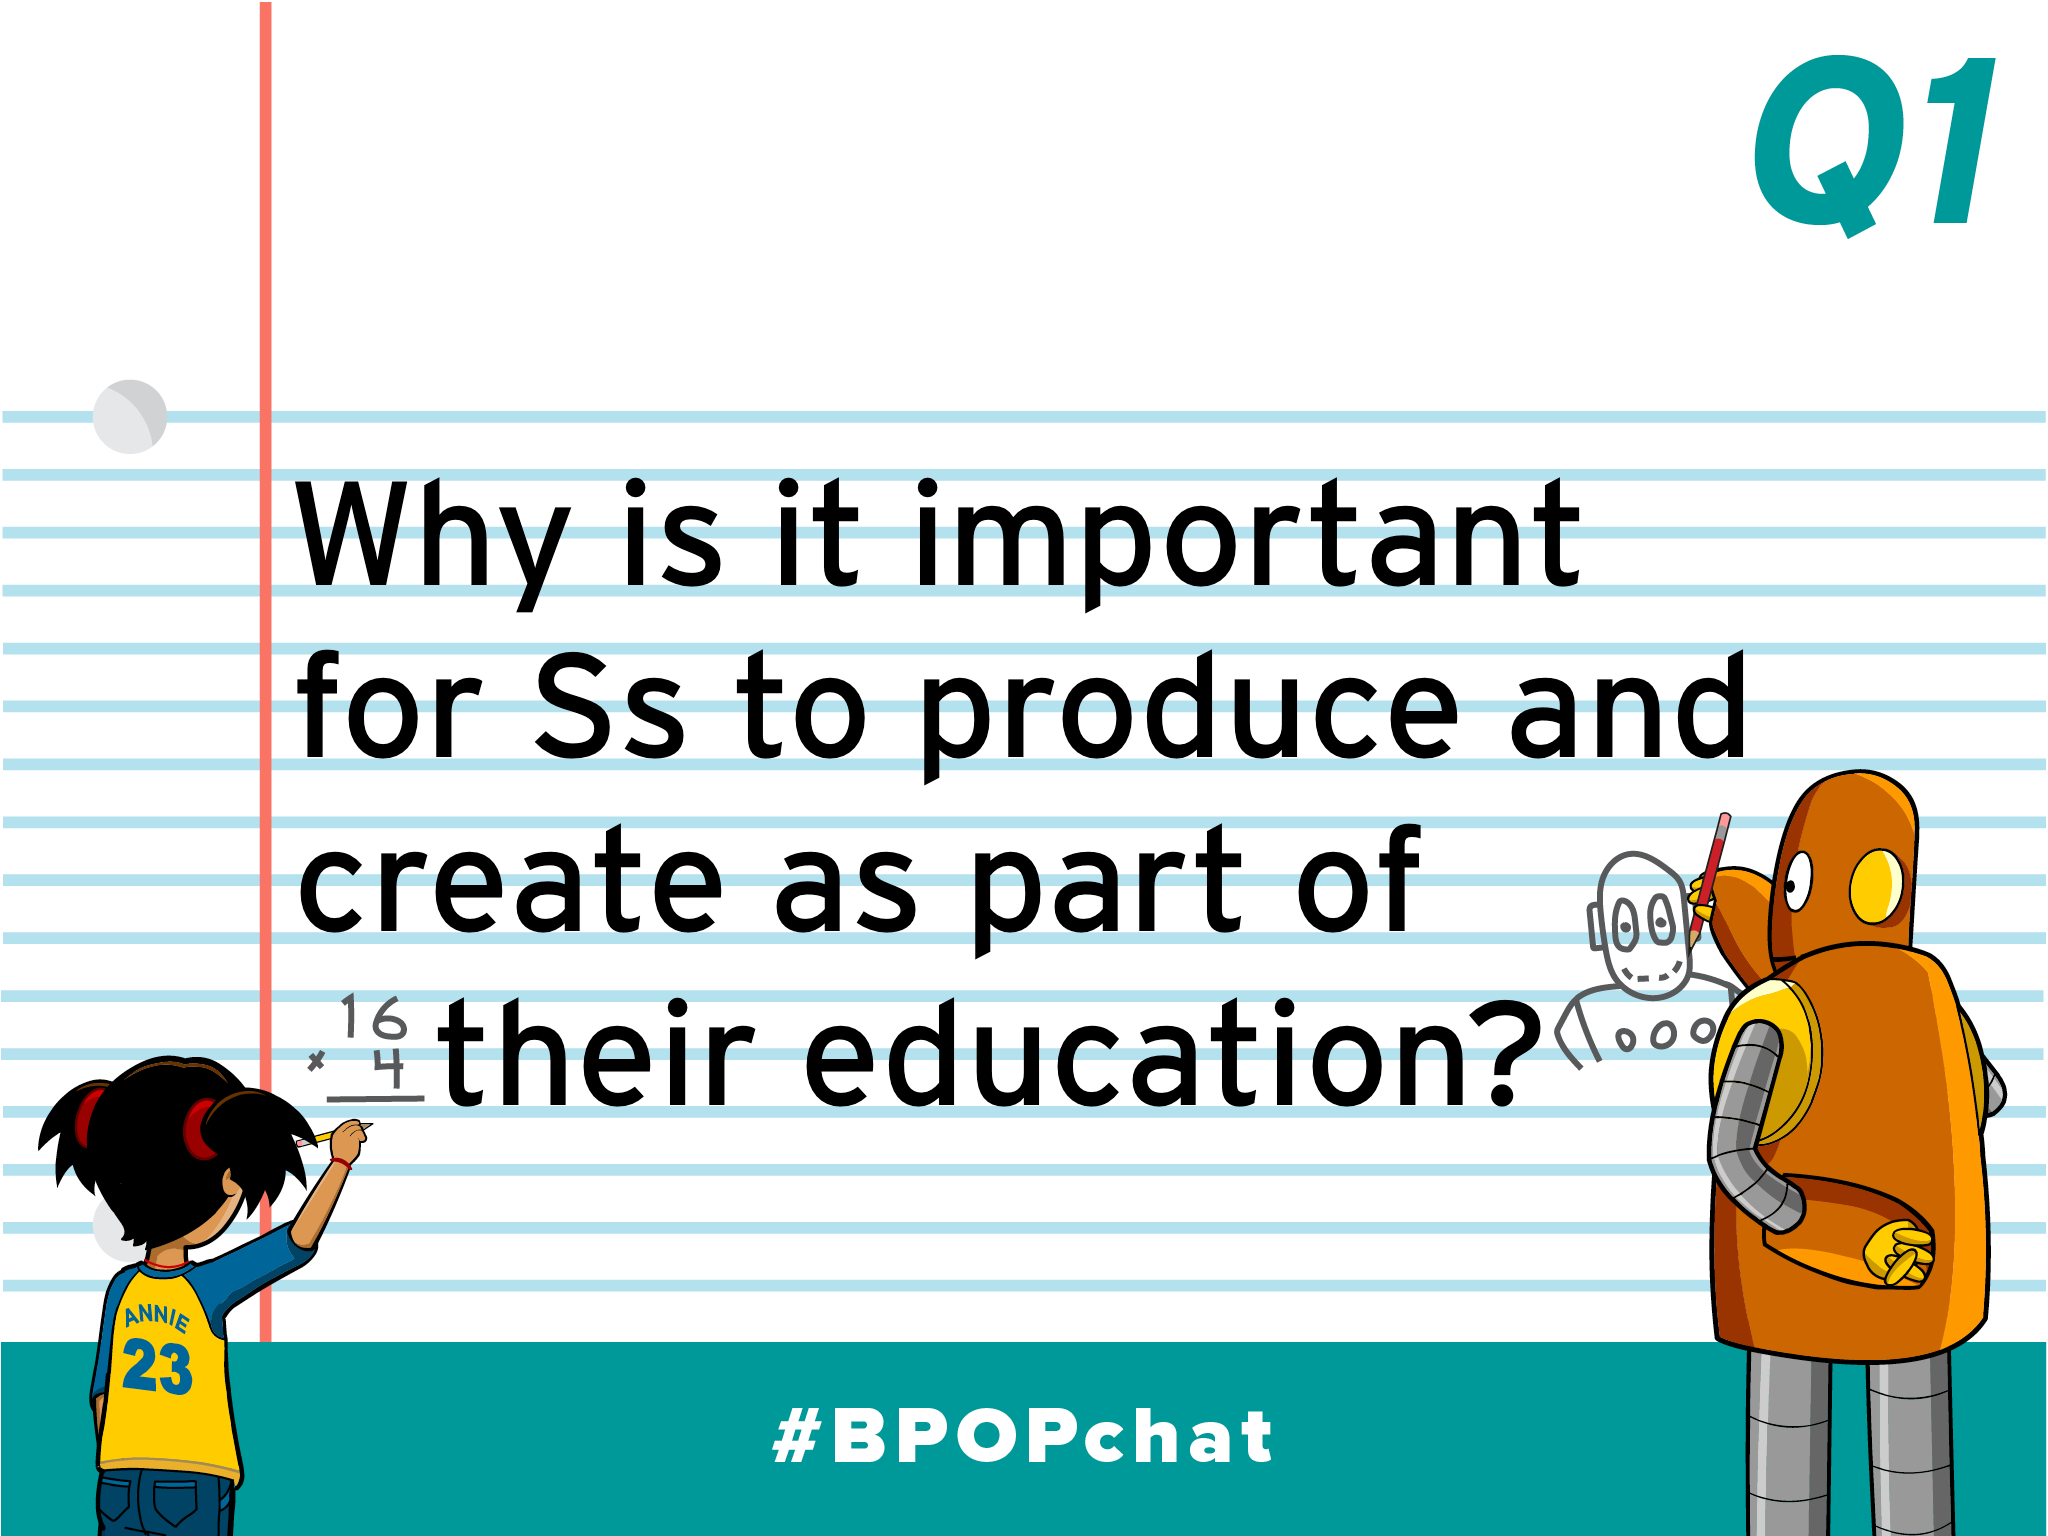 #BPOPchat RECAP: Students as Creators